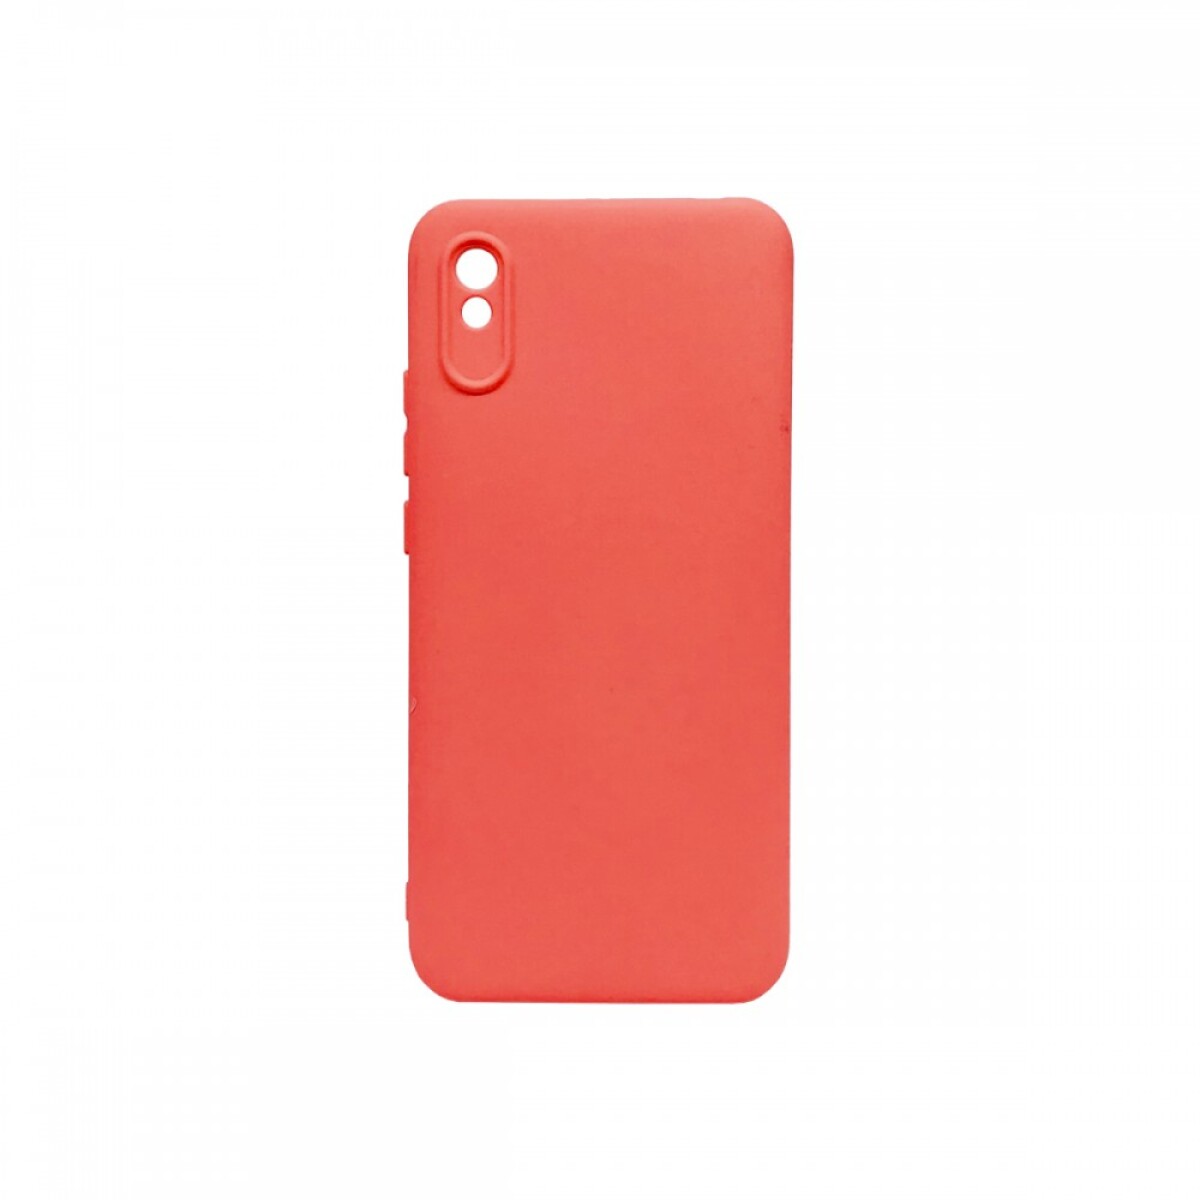 Protector Case de Silicona para Xiaomi Redmi 9A - Rojo 